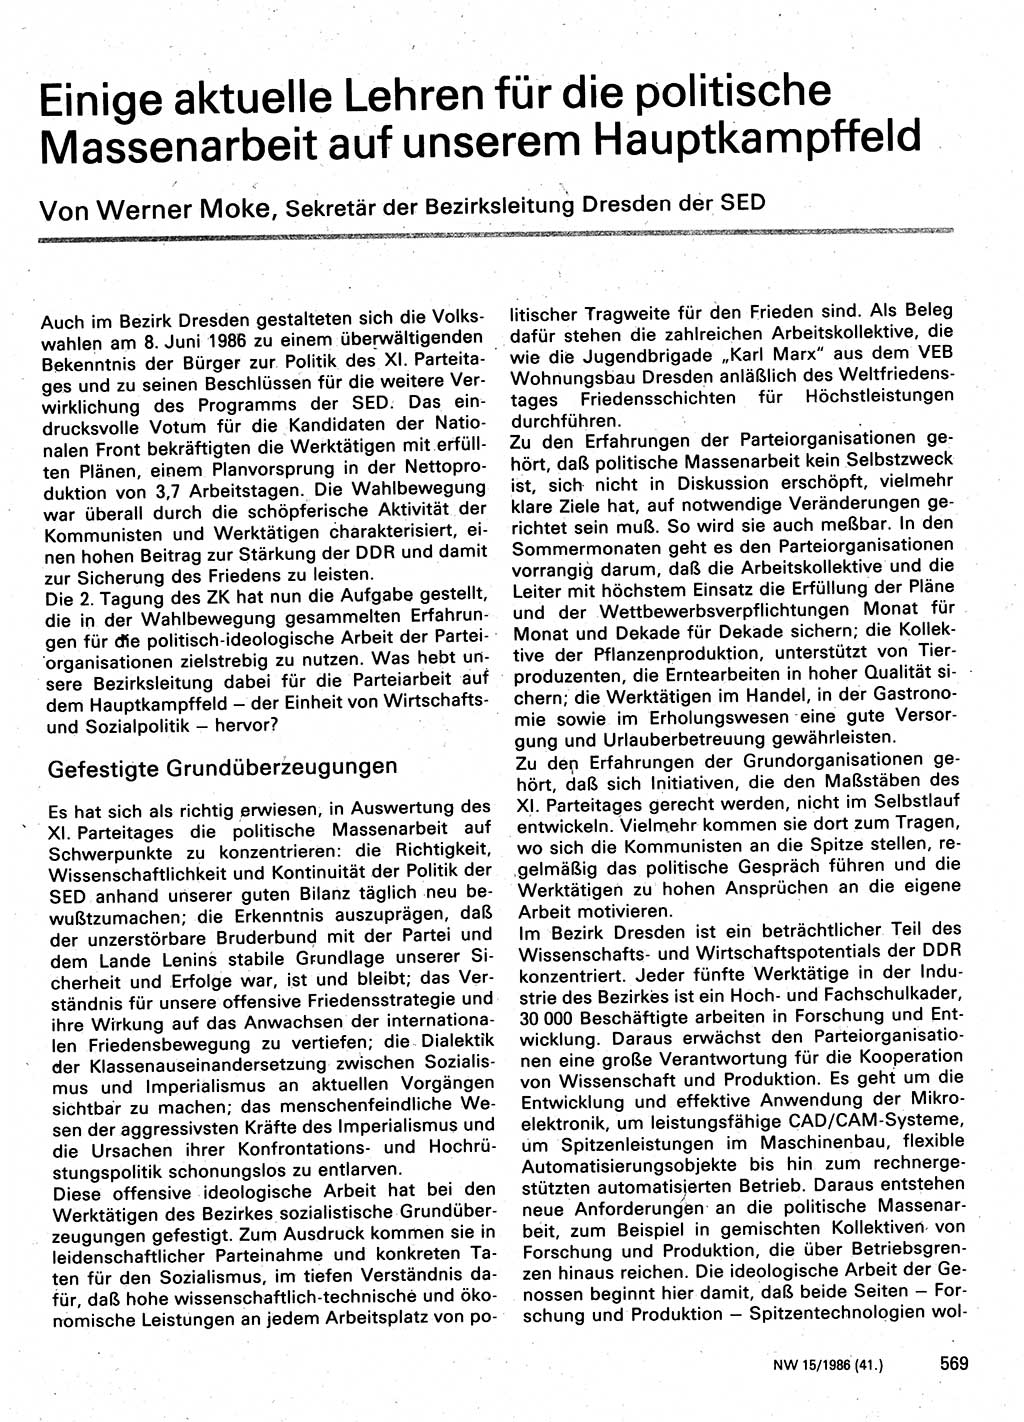 Neuer Weg (NW), Organ des Zentralkomitees (ZK) der SED (Sozialistische Einheitspartei Deutschlands) für Fragen des Parteilebens, 41. Jahrgang [Deutsche Demokratische Republik (DDR)] 1986, Seite 569 (NW ZK SED DDR 1986, S. 569)